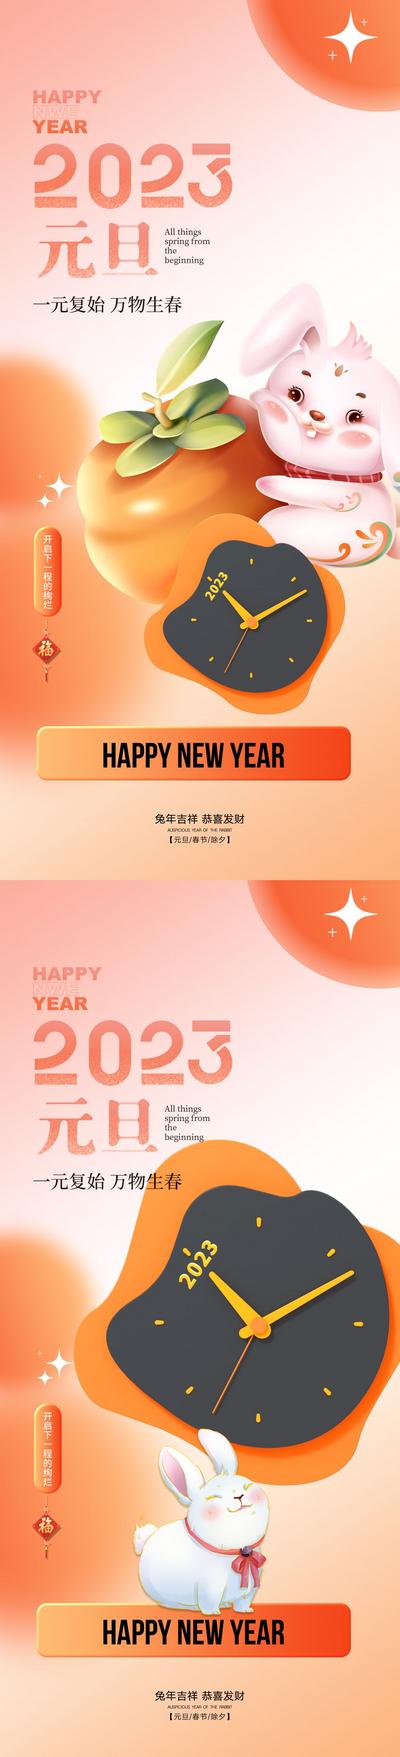 南门网 海报 地产  公历节日 2023 兔年 元旦 新年  